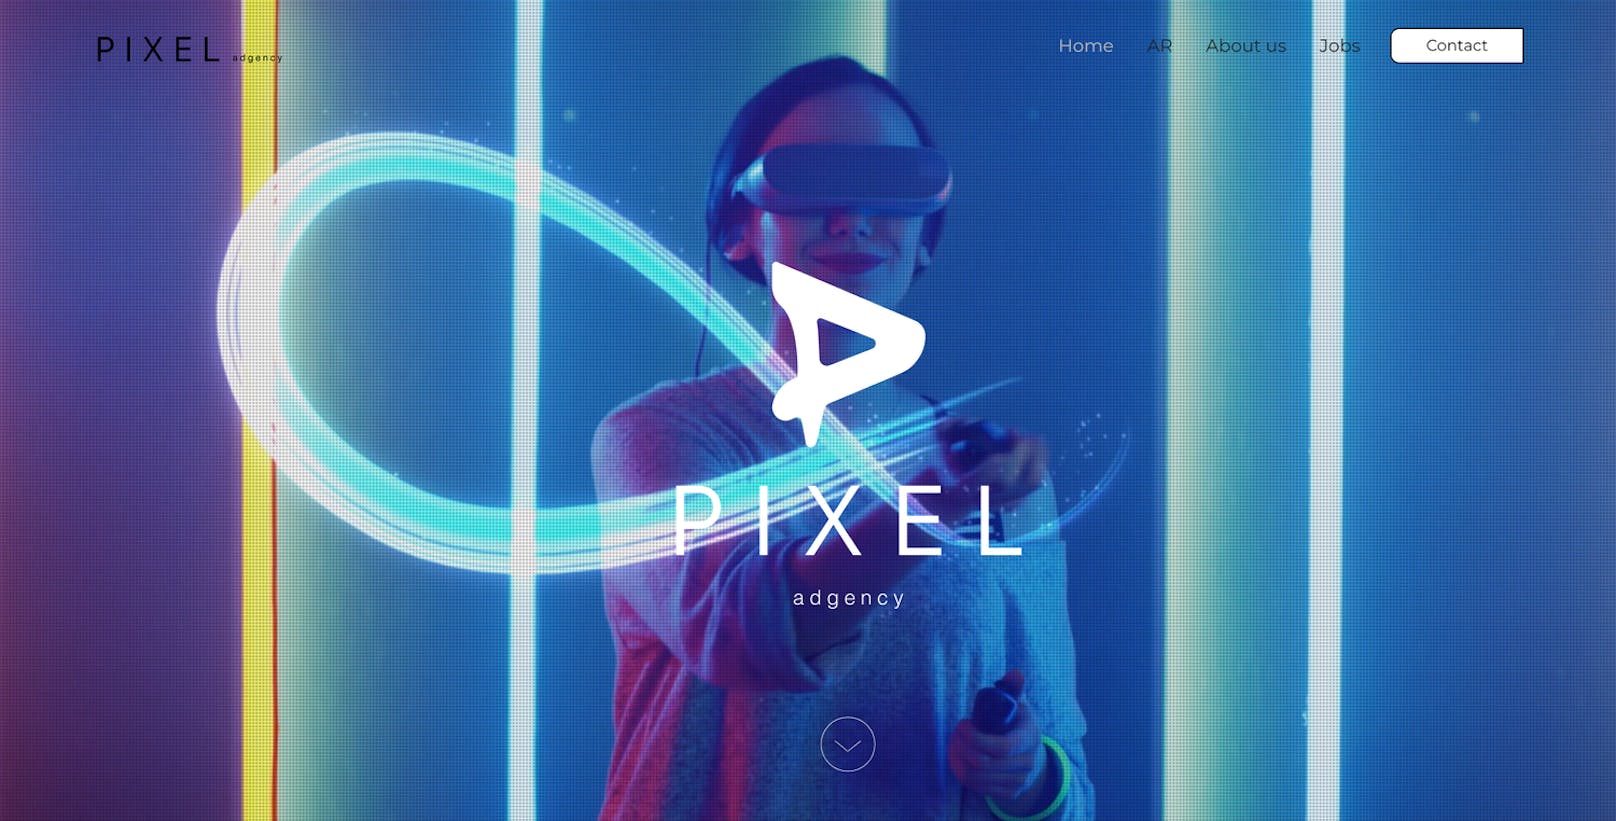 Die neu gegründete Agentur "Pixel Adgency" verwandelt Augmented Reality für Werbekampagnen vom Add-on in ein Must-have.